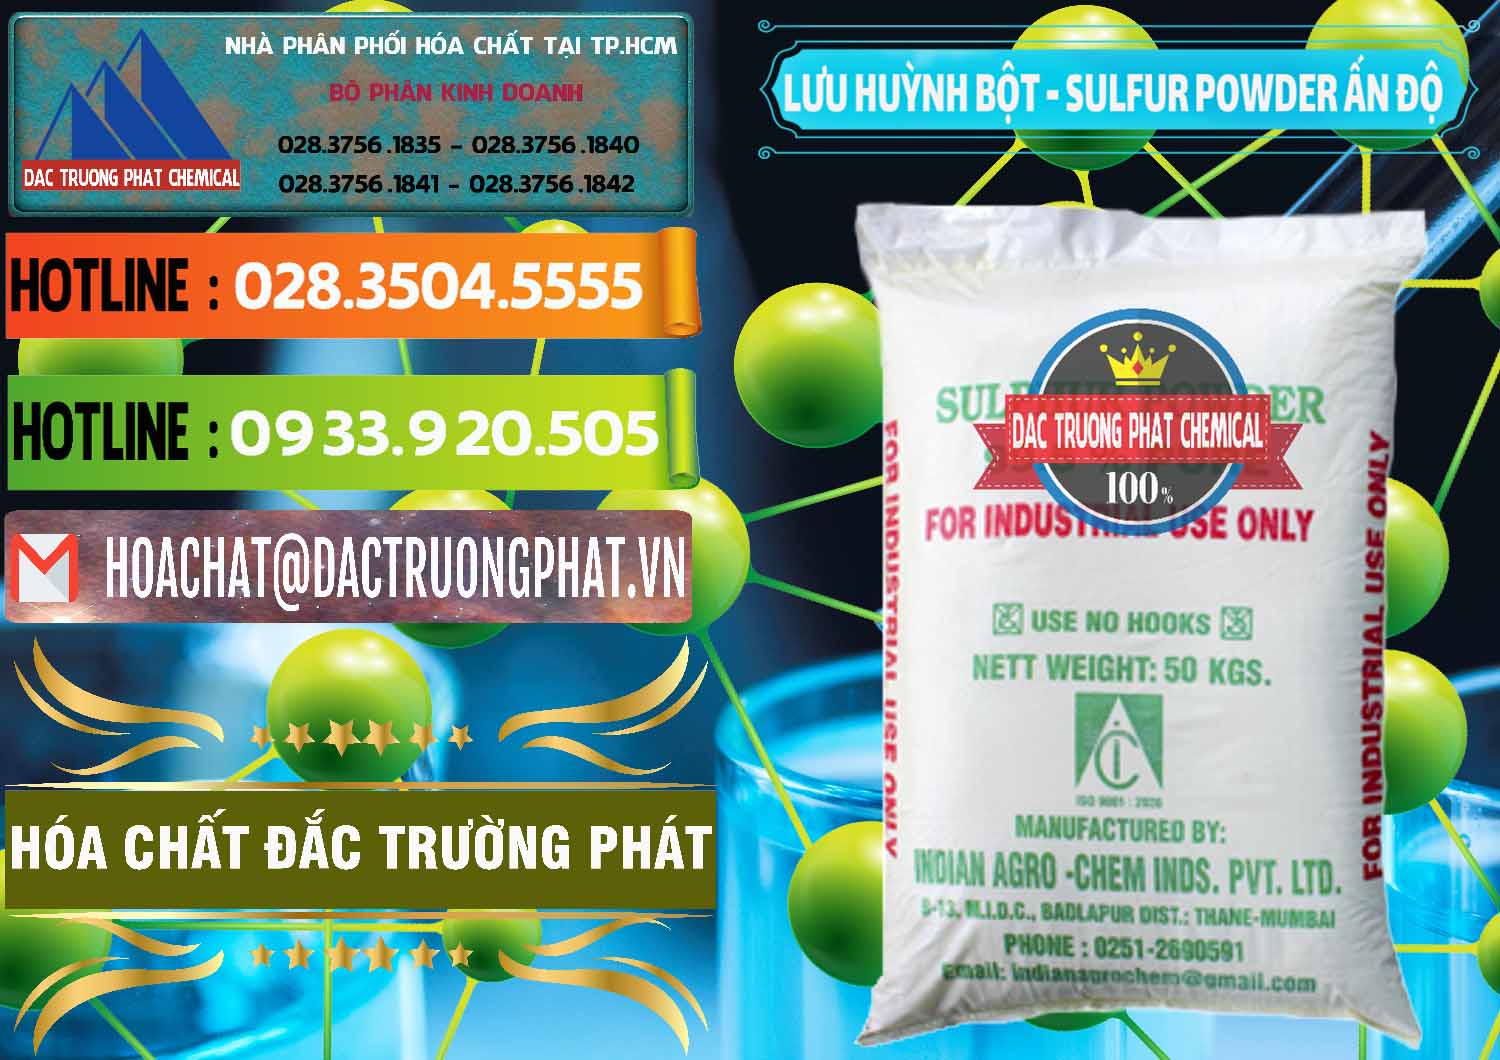 Công ty phân phối & bán Lưu huỳnh Bột - Sulfur Powder Ấn Độ India - 0347 - Nơi chuyên phân phối & nhập khẩu hóa chất tại TP.HCM - cungcaphoachat.com.vn